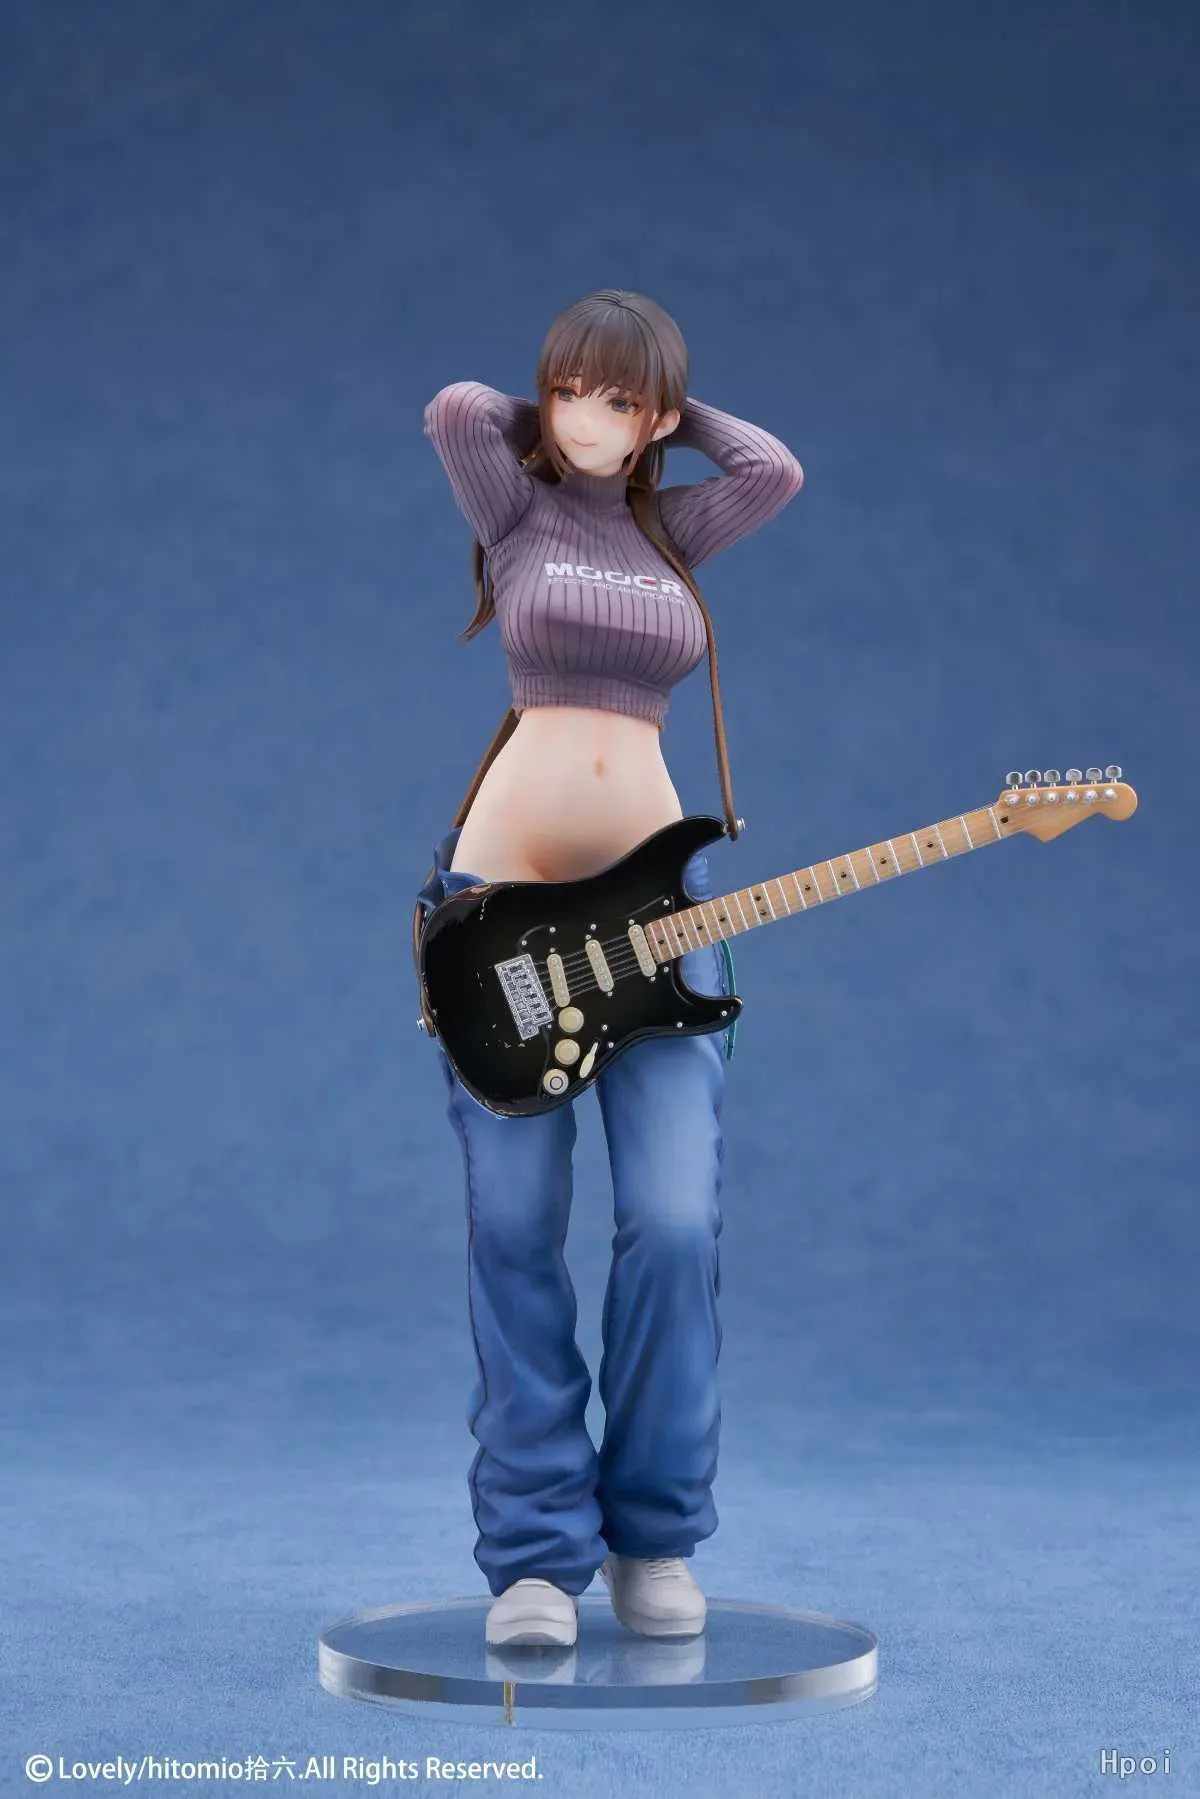 Action Toy Figures 200 mm Figure anime guitare meimei soeurs de guitare mei sexy fille pvc figure figure jouet adultes collection modèle modèle poupée cadeaux y2404251ixn